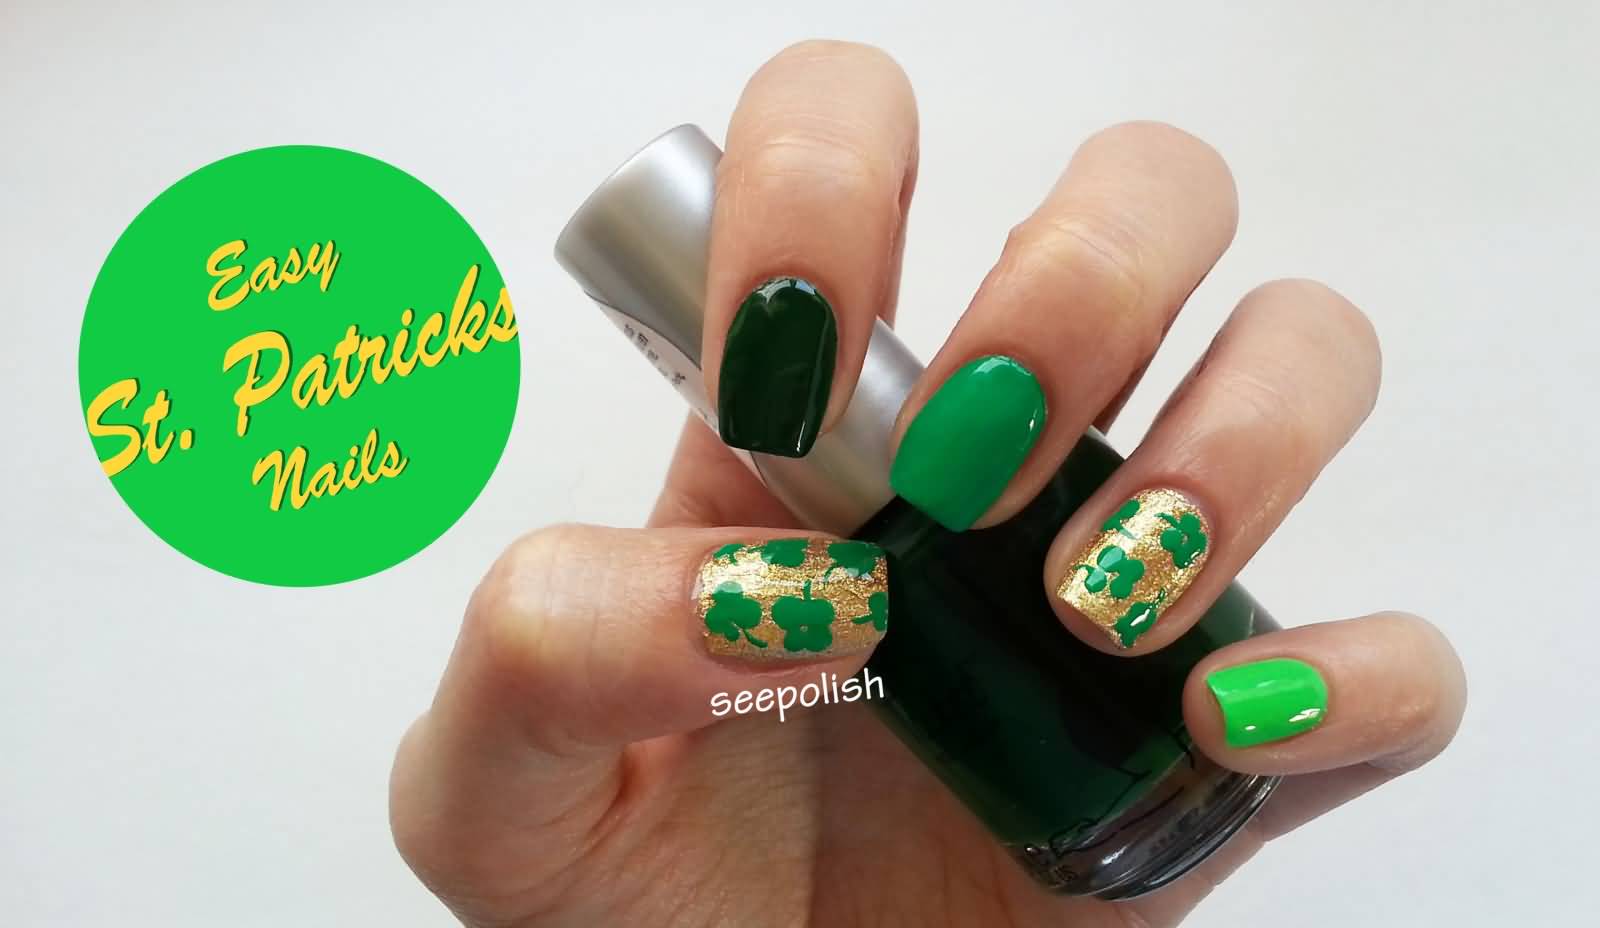 Golden Nails With Green Shamrock Leaf Design Nail Art